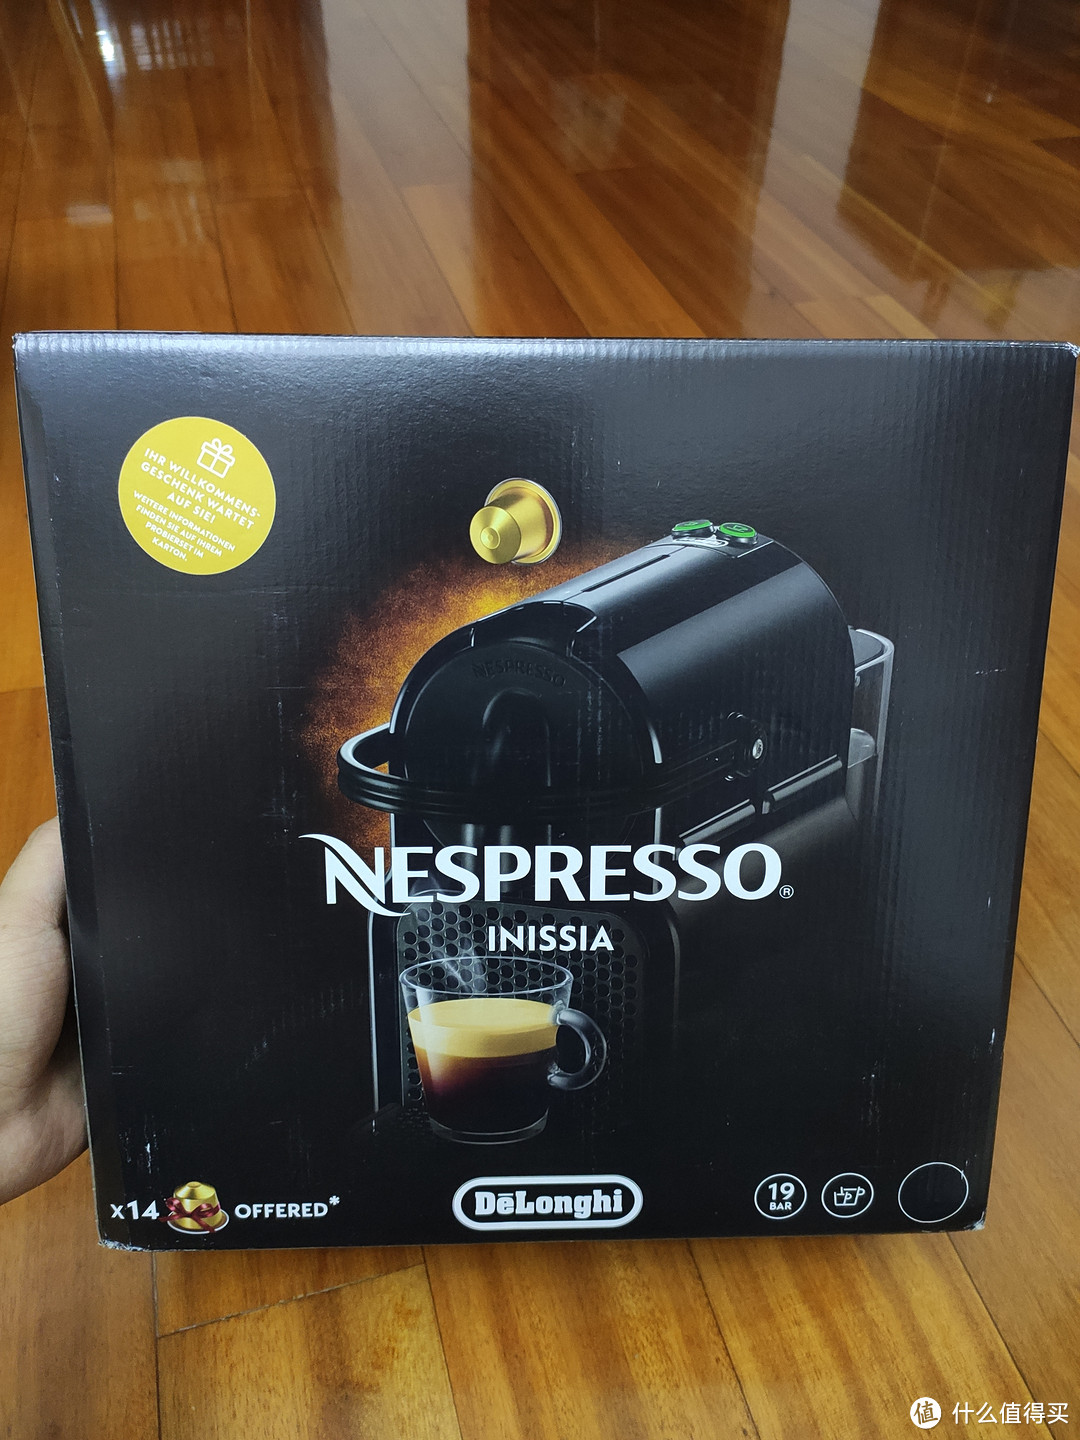 小小的提升一下生活品质吧，德龙Nespresso胶囊咖啡机初体验